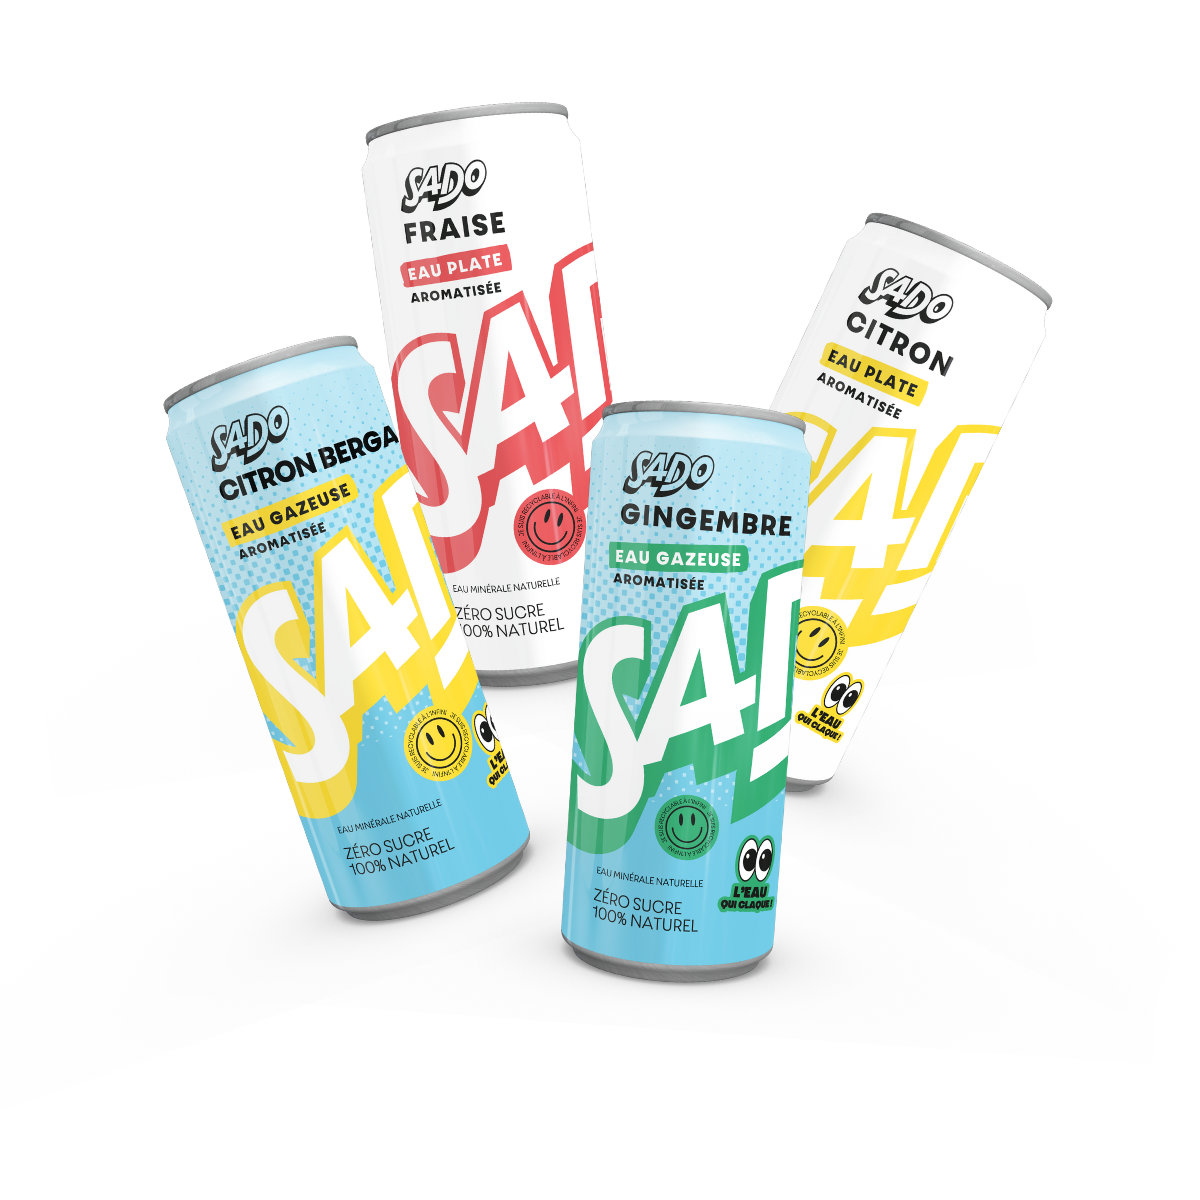 Canettes d'eau minérale aromatisée, plate ou gazeuse par SADO Waters. Un packaging recyclable, fun et coloré